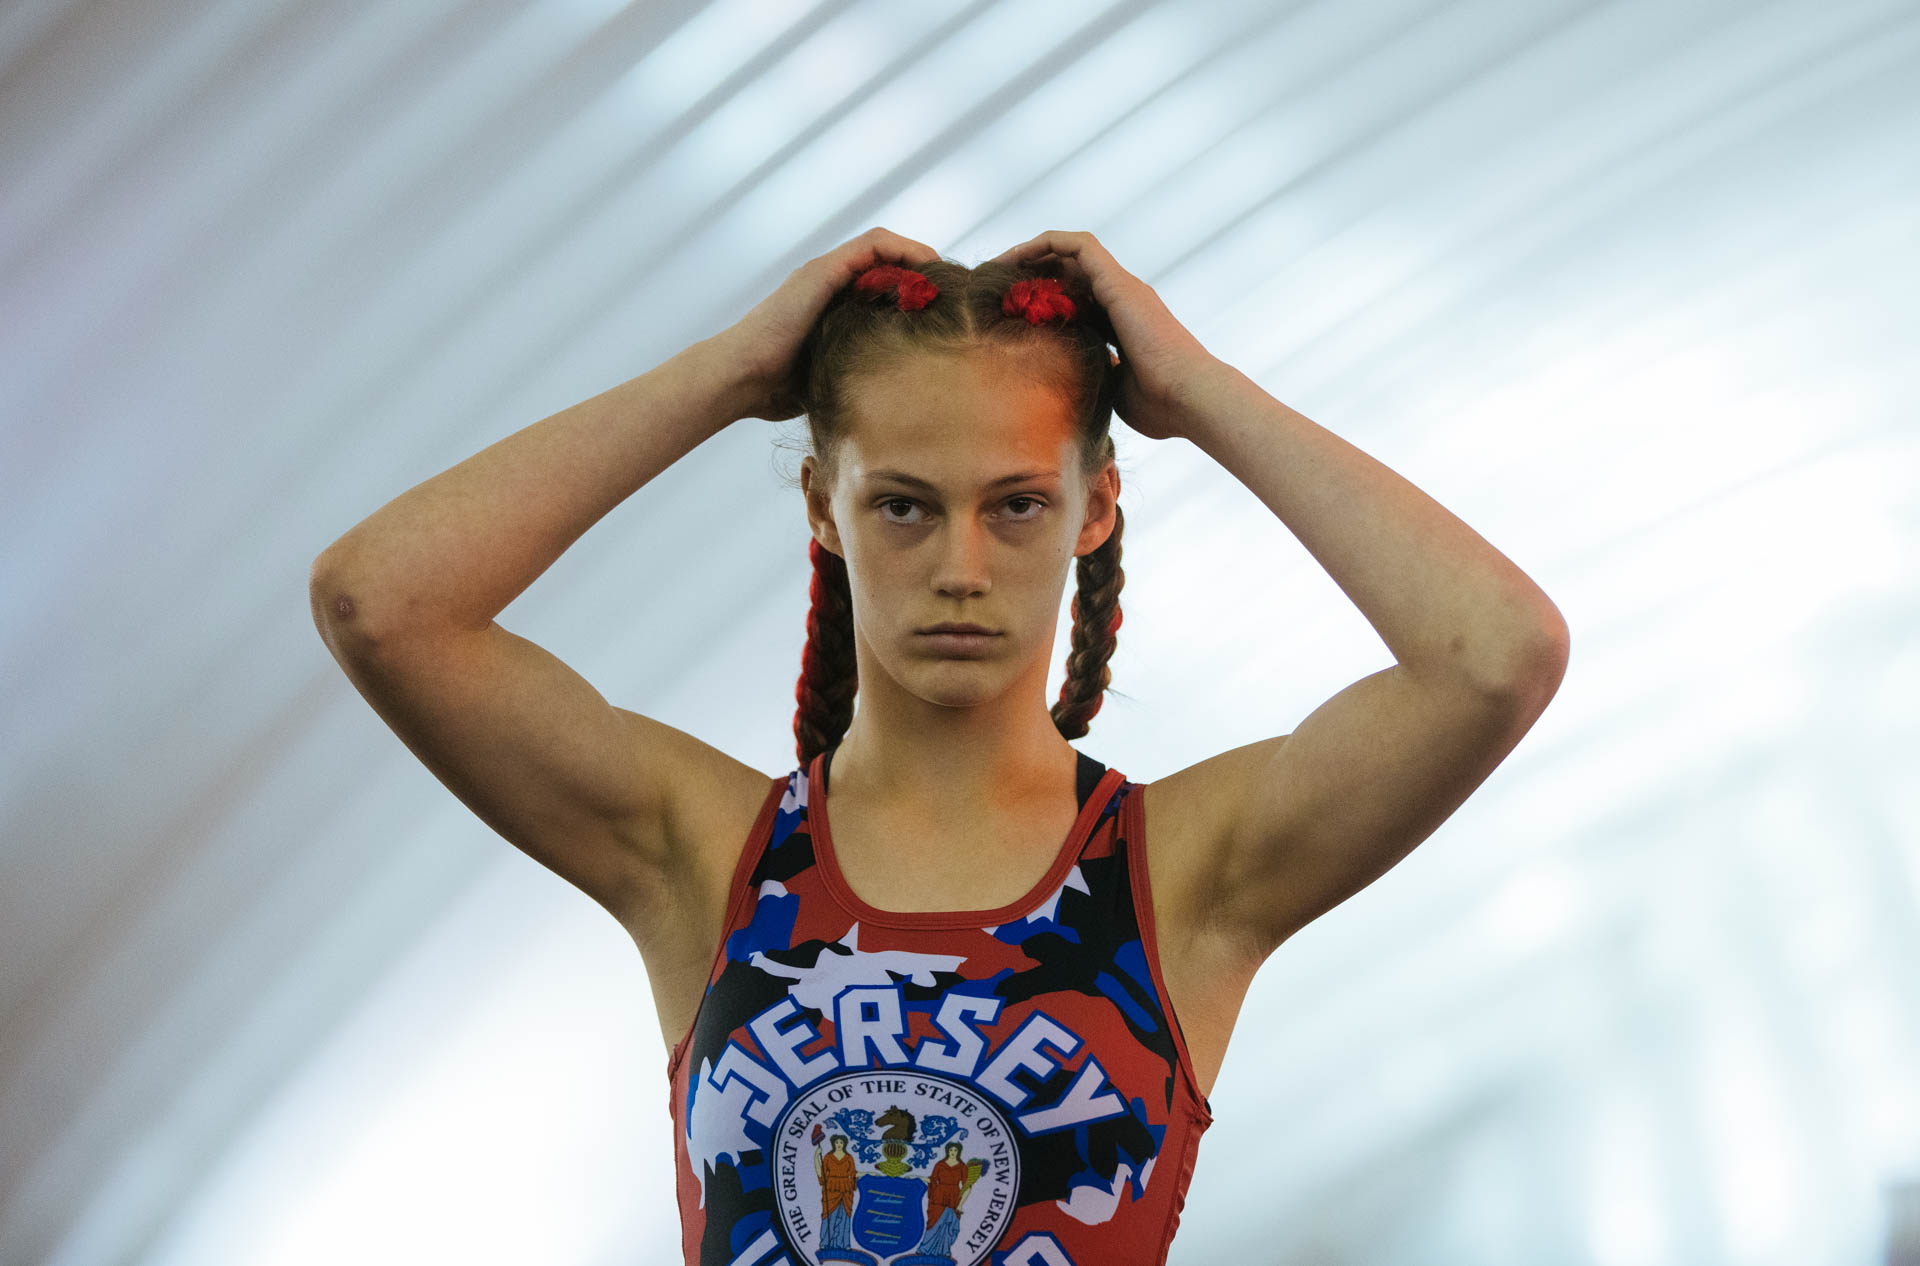 girls-wrestling-wisconsin-dells-state-tournament-jersey-united-braids-intimidating-travis-dewitz-0561.JPG